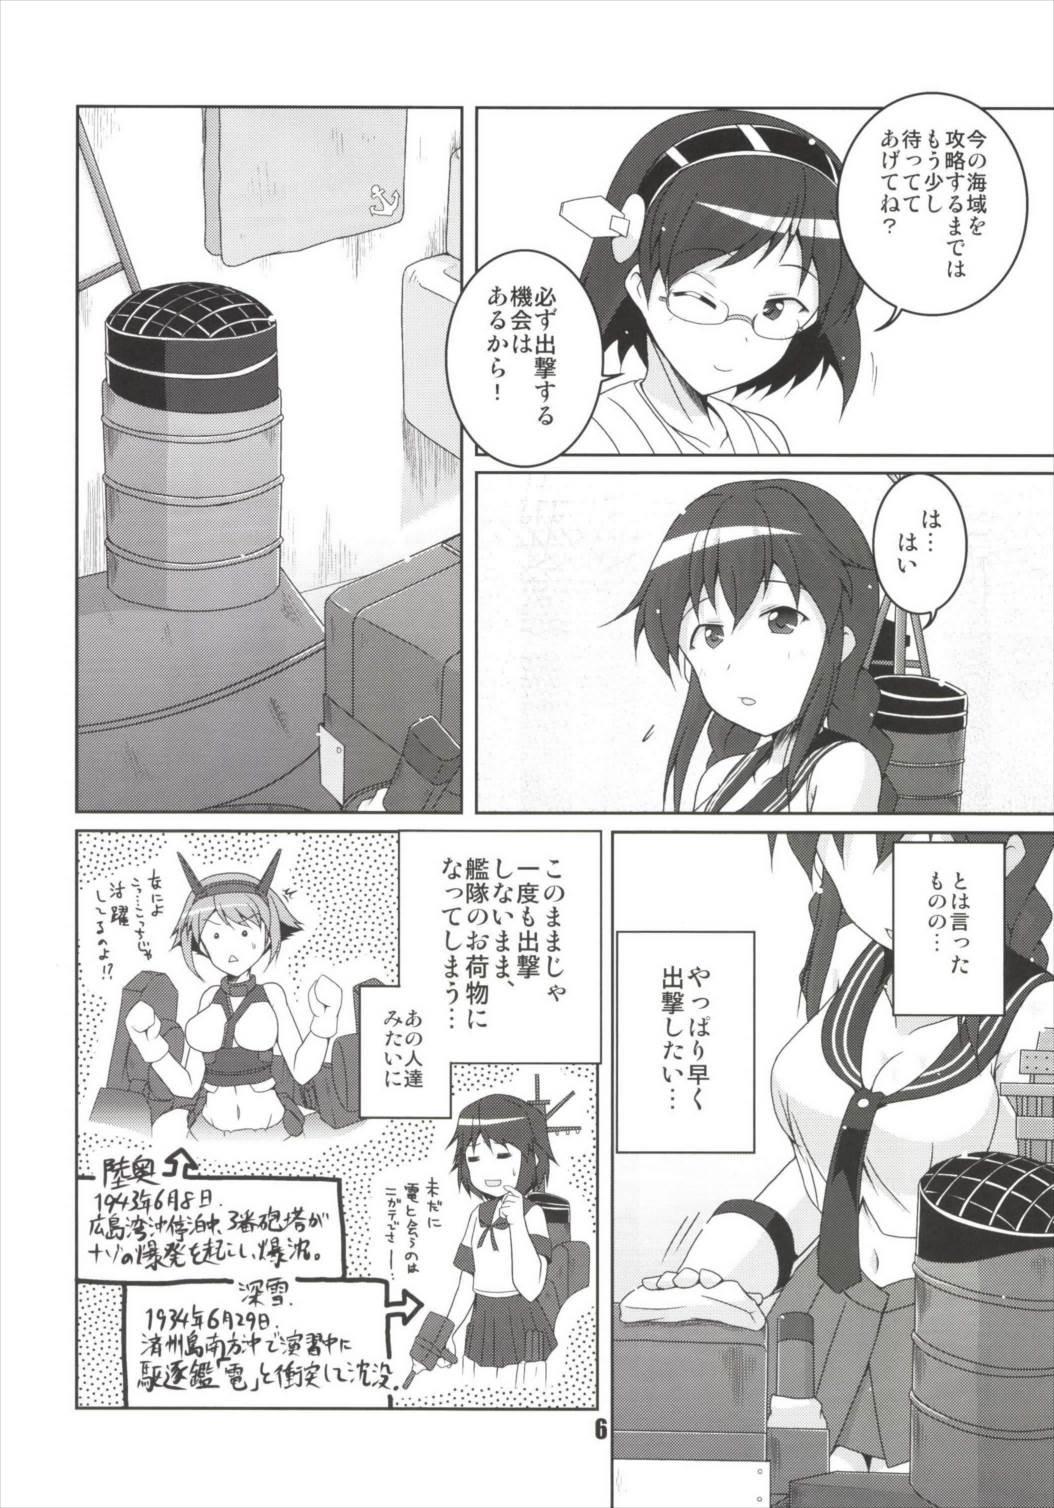 Scene Noshiro no Deban wa Mada desu ka? - Kantai collection Foot Fetish - Page 6